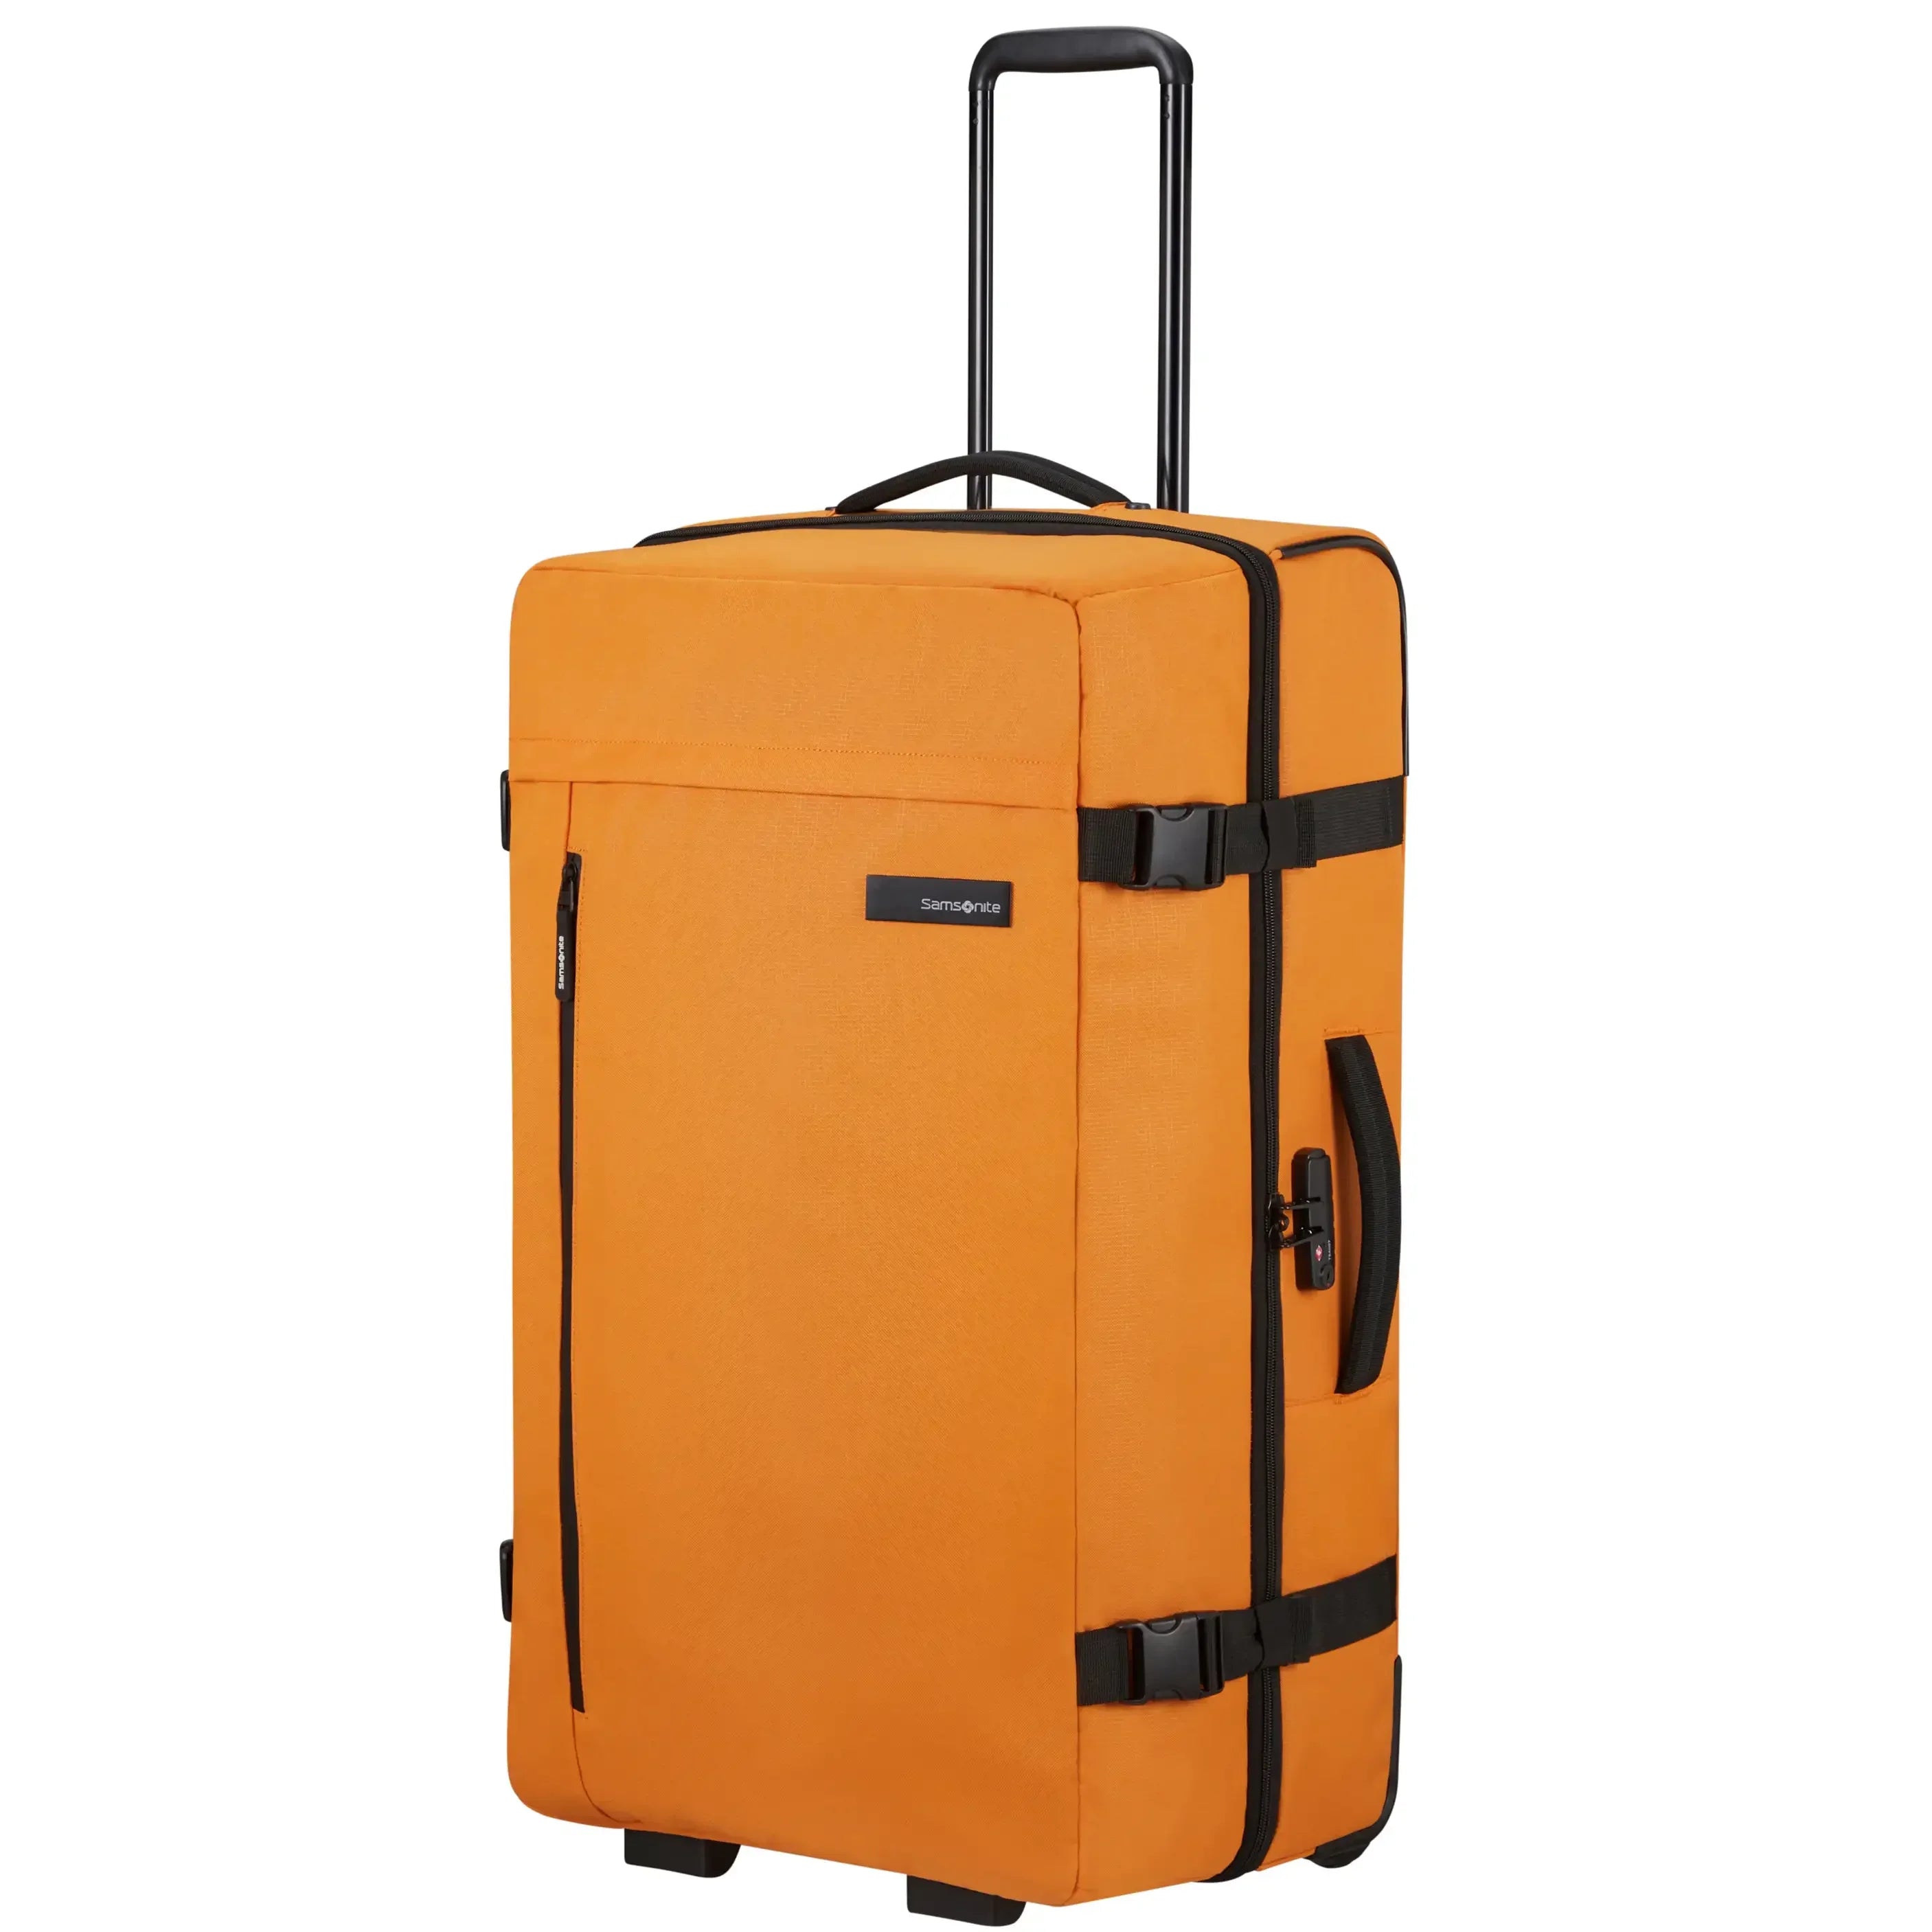 Samsonite | Bags | Samsonite Black Label Duffel Bag Luggage Herringbone Travel  Bag | Poshmark